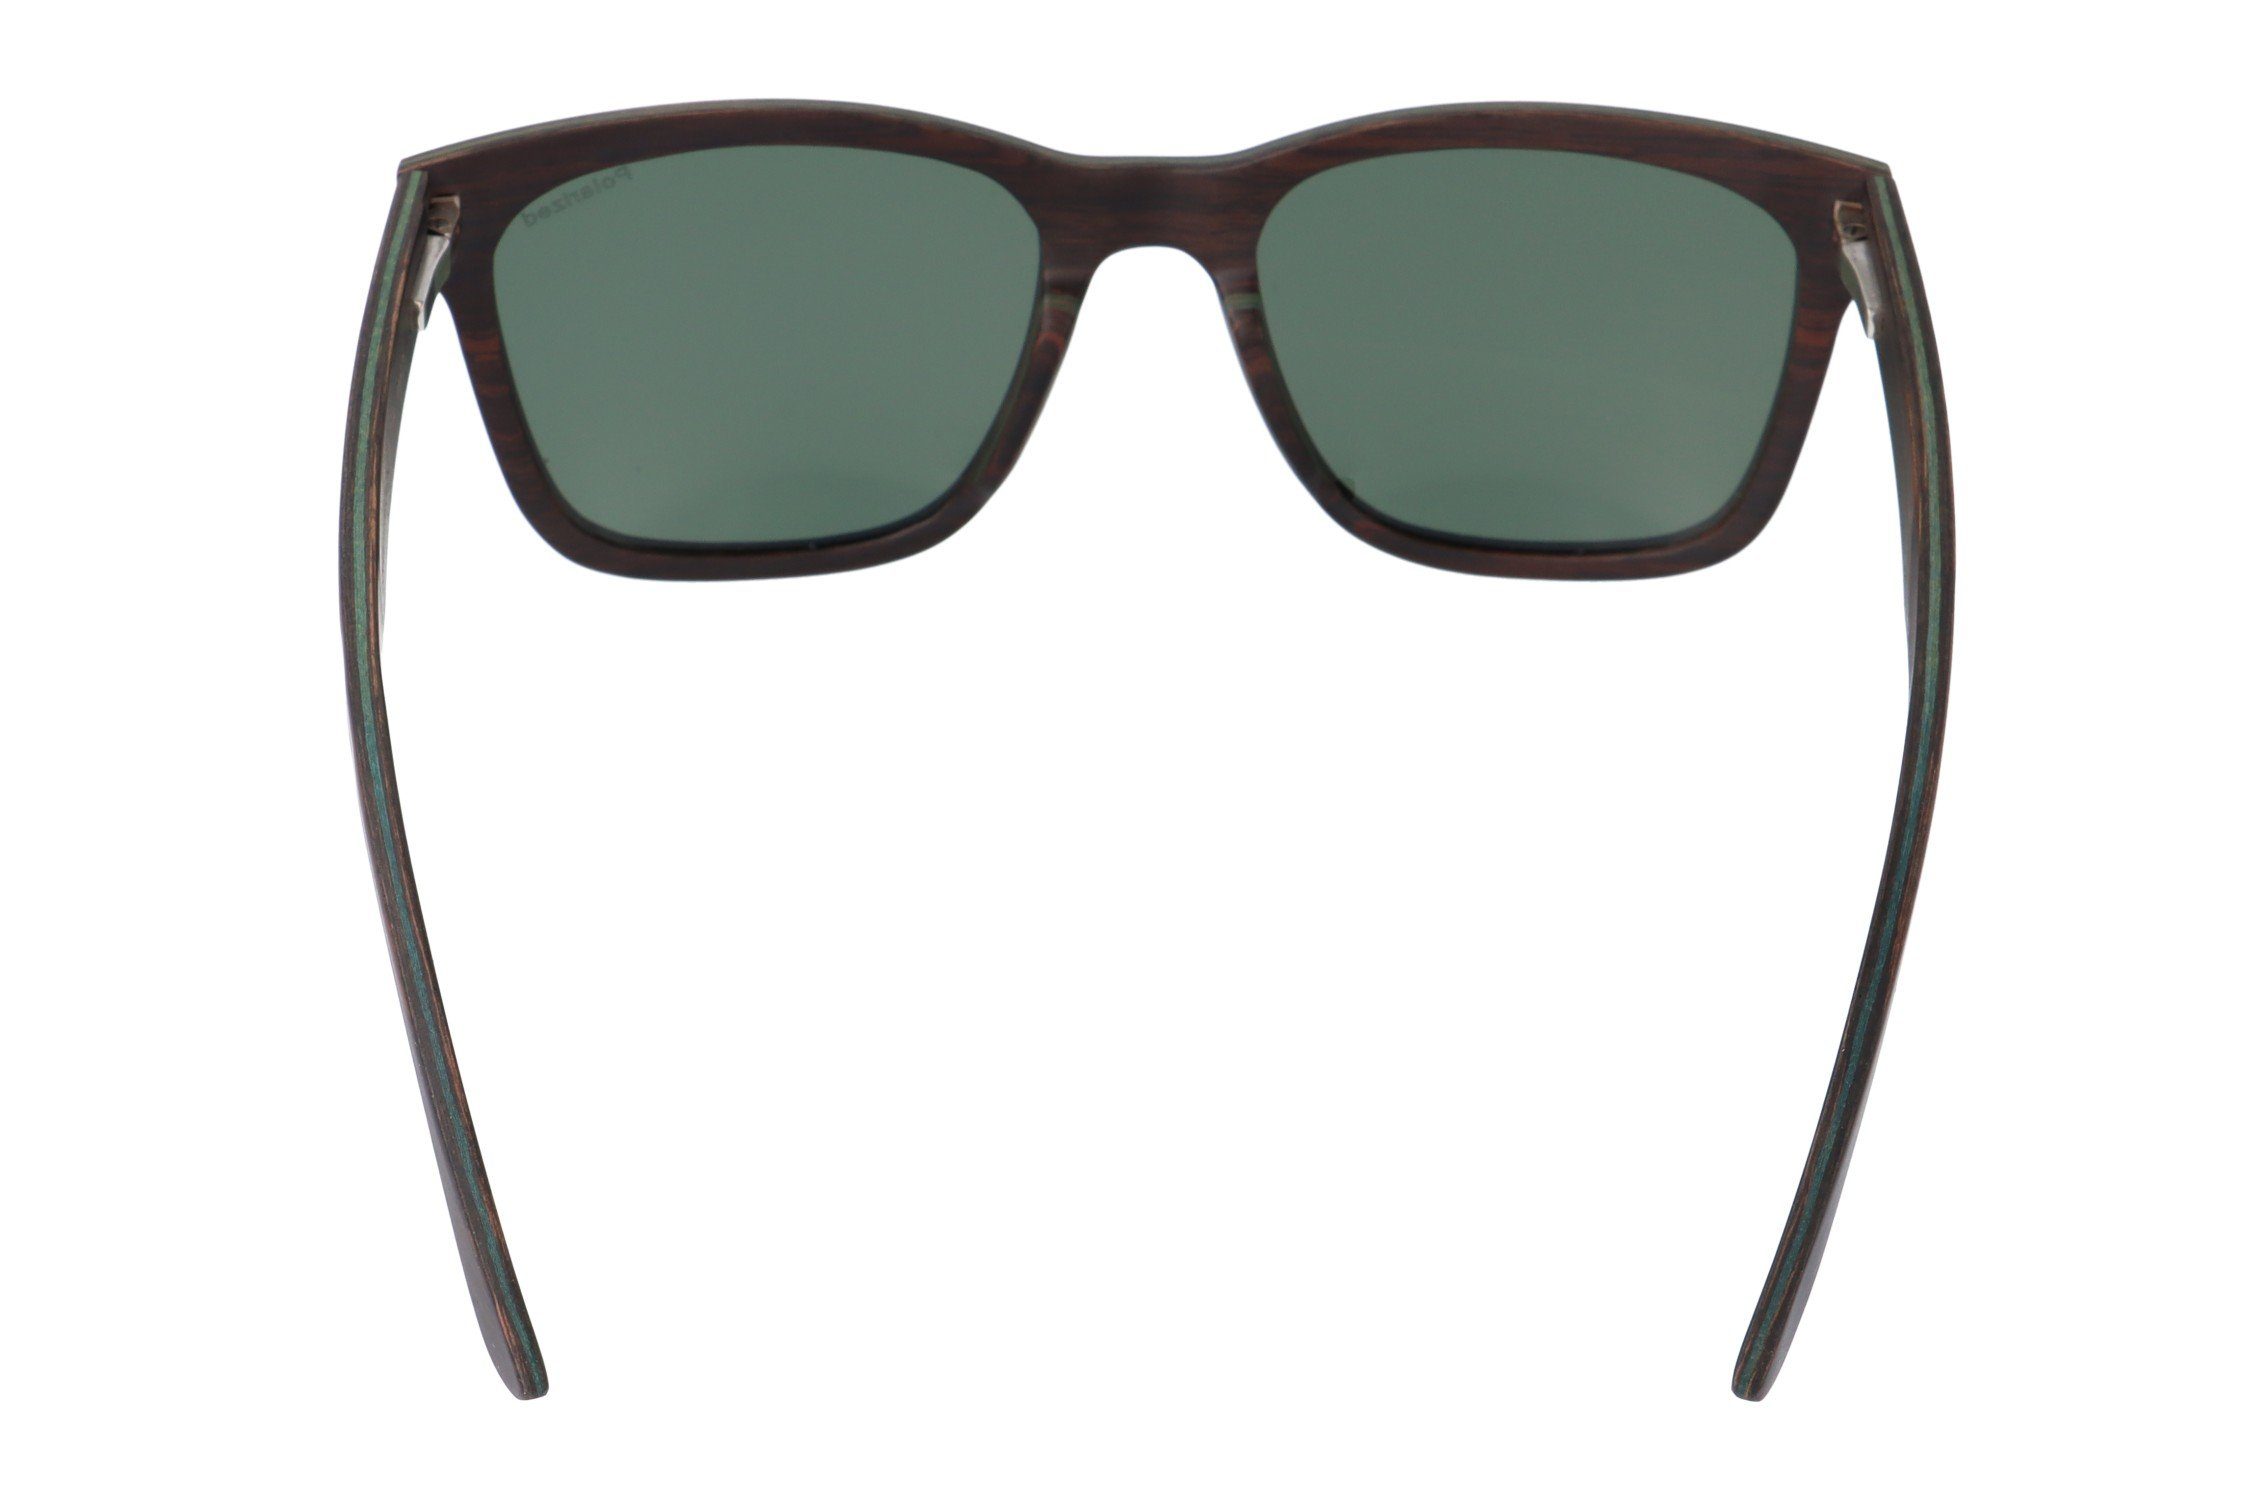 Gamswild Sonnenbrille WM0011 GAMSSTYLE polarisierte & Unisex, G15 Holzbrille Damen Gläser grau, blau braun, Herren G15 in Glas